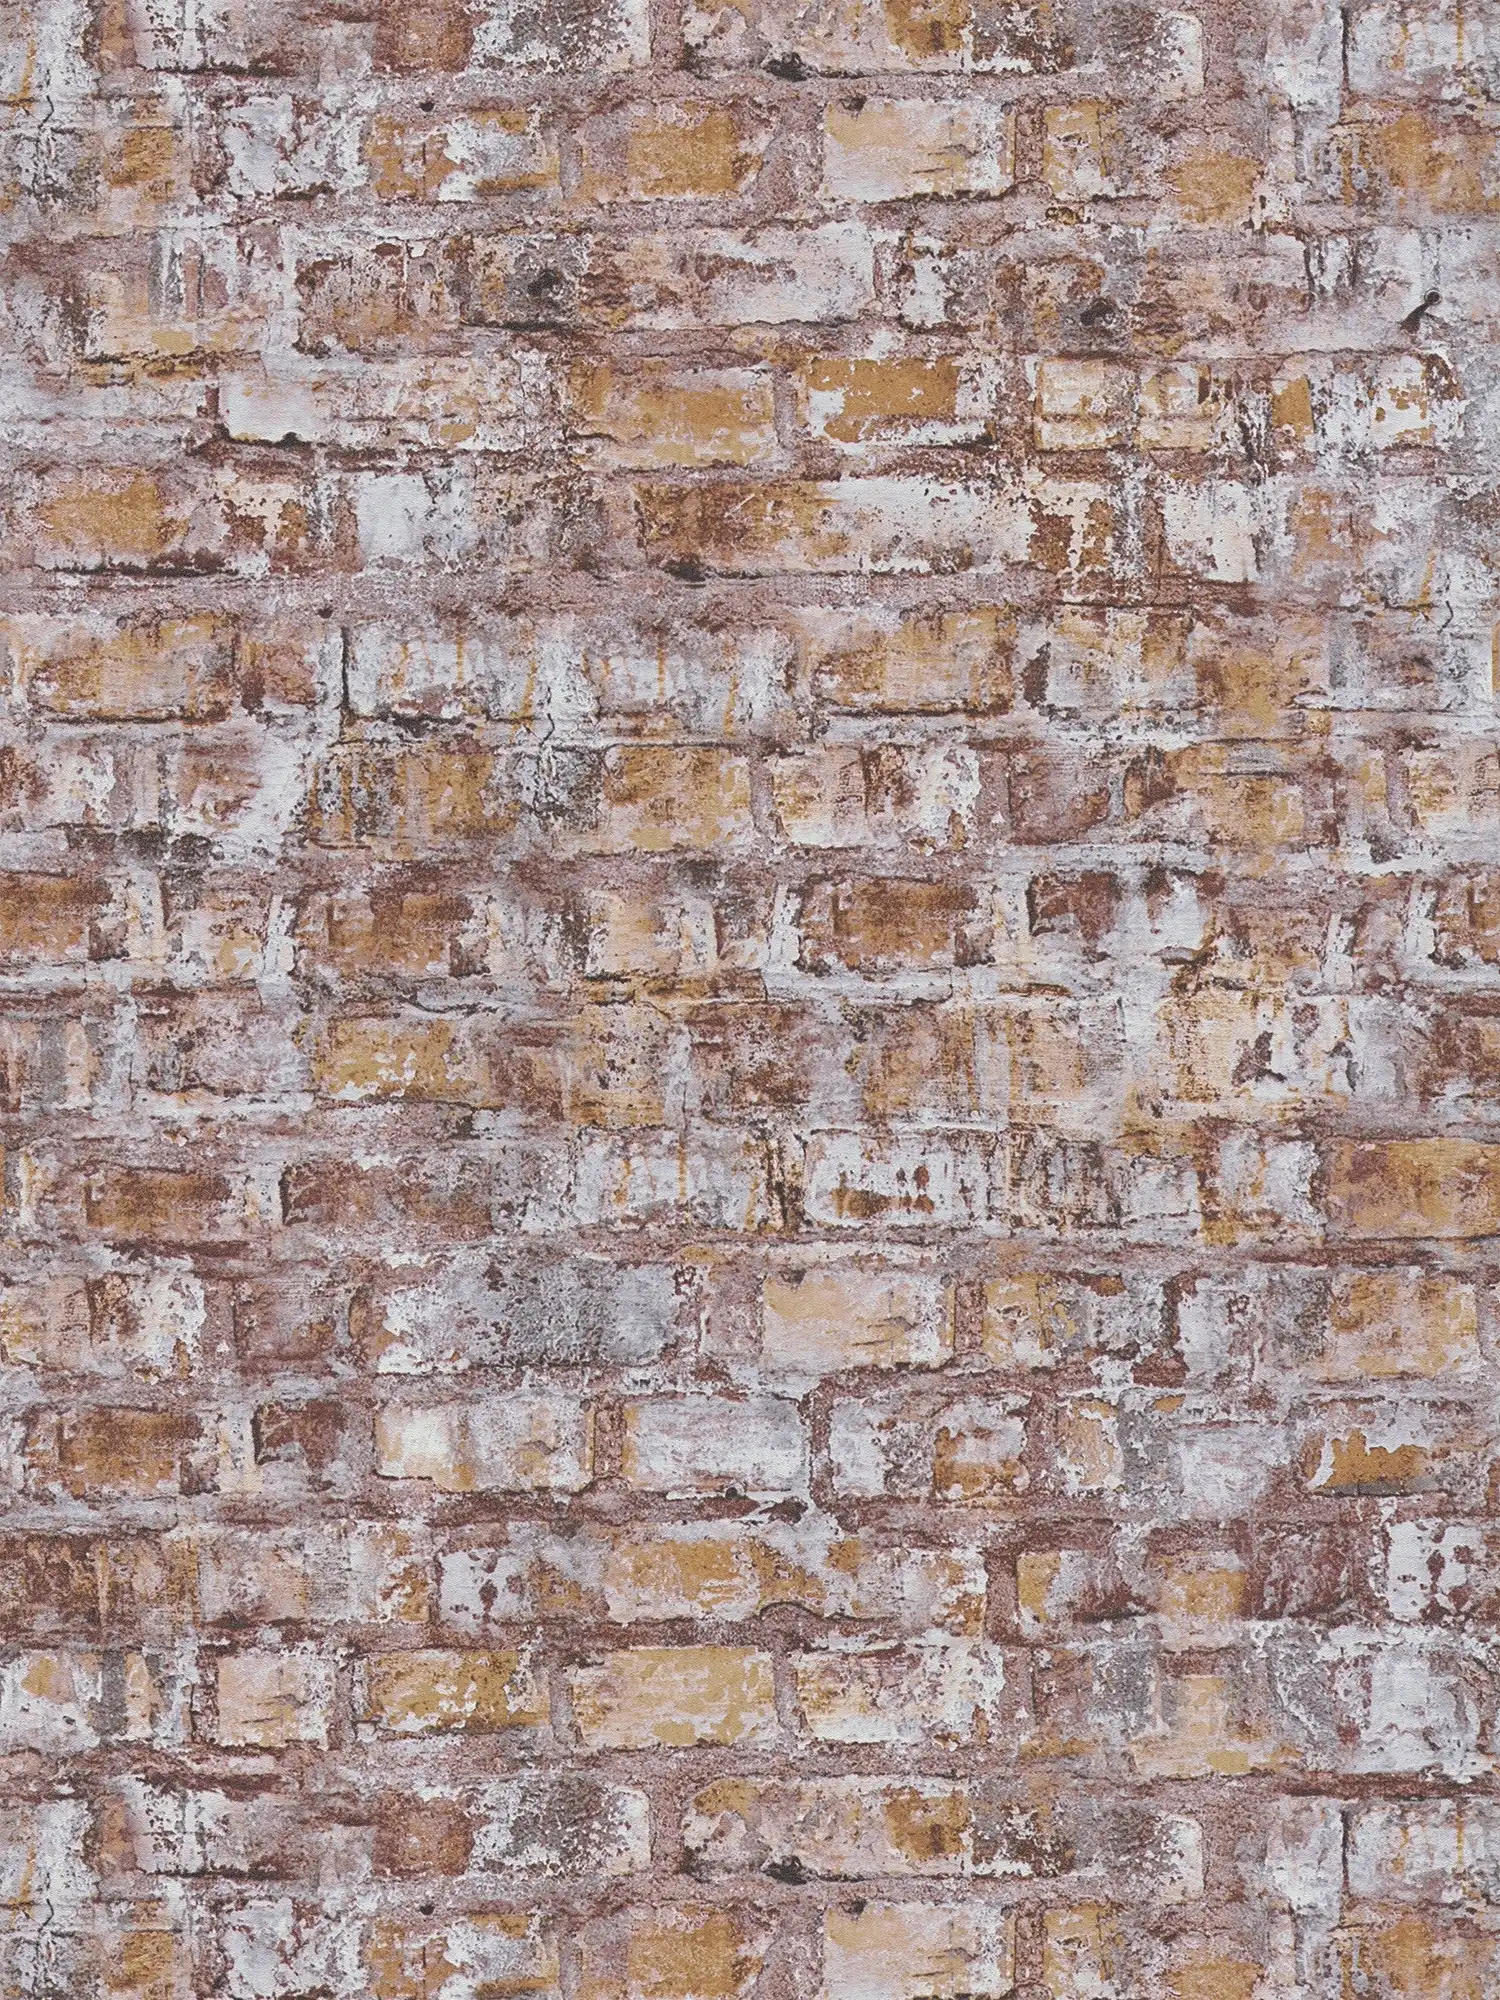 Vliestapete in Ziegelsteinoptik mit Mauerdesign – grau, braun, weiß, rostfarben
